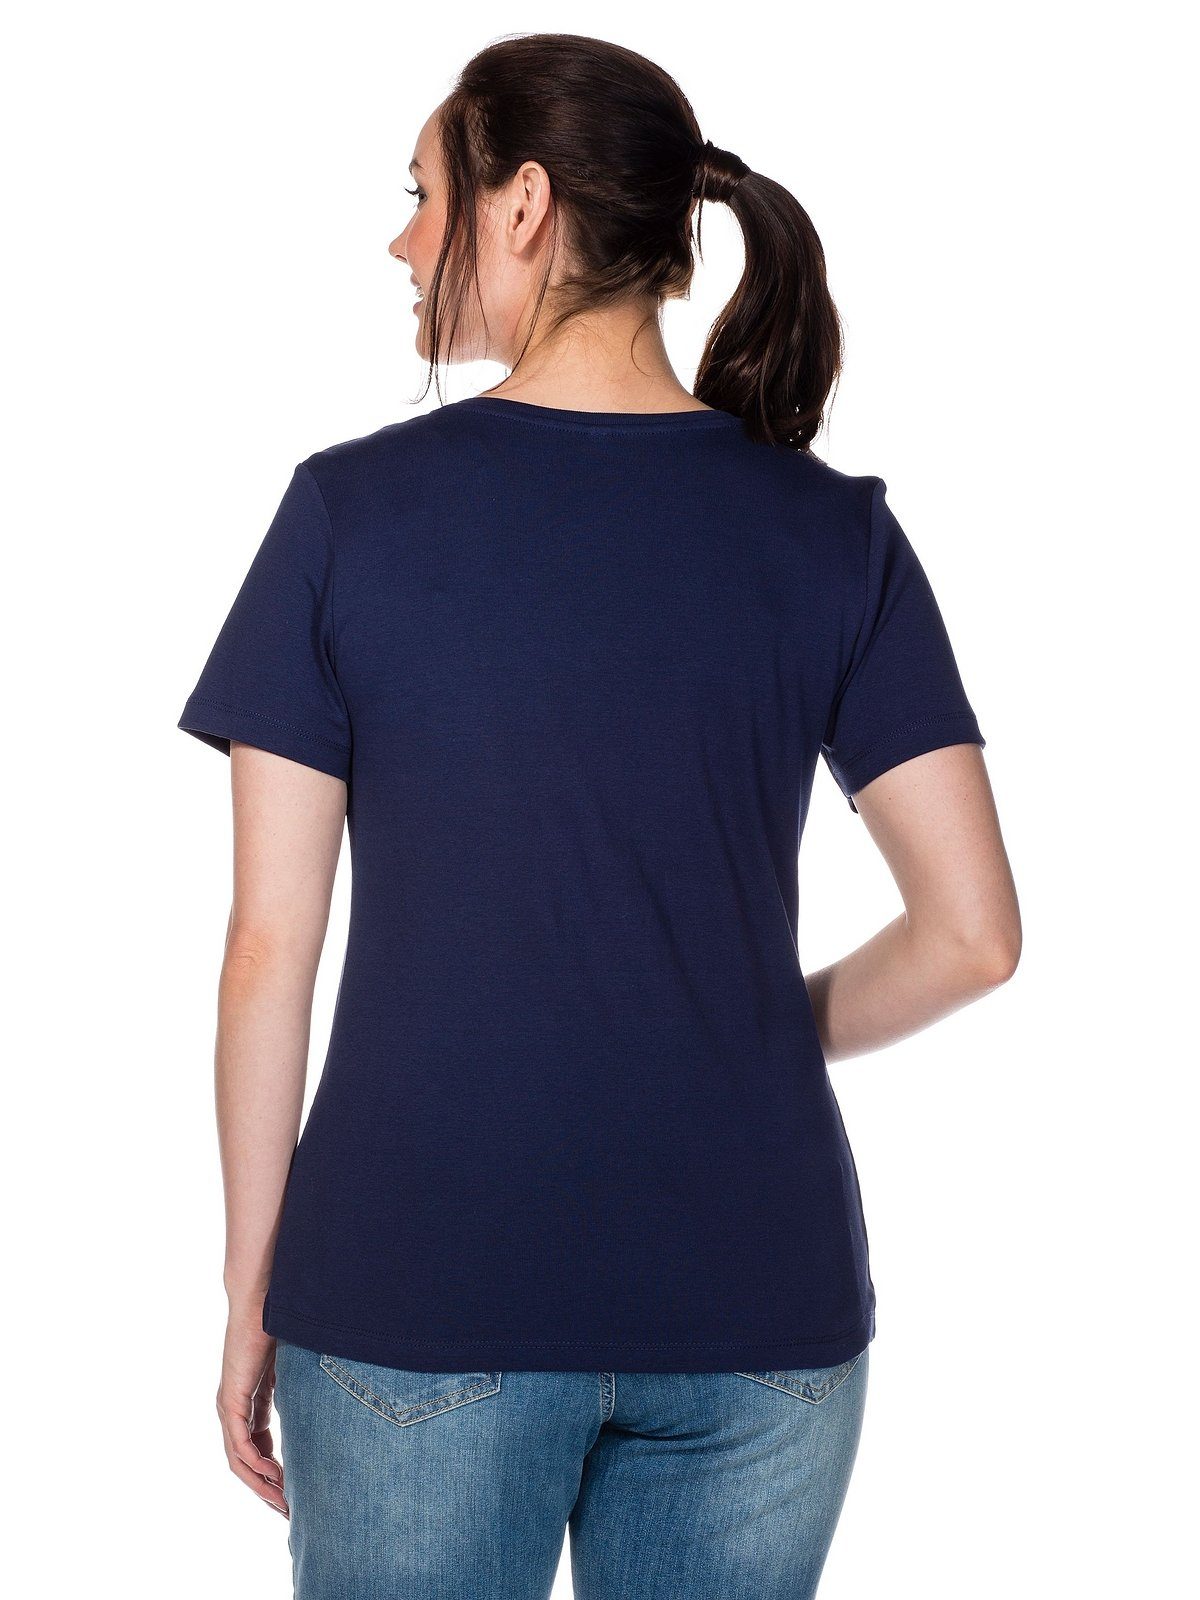 fein Große T-Shirt gerippter aus Sheego Größen marine Qualität